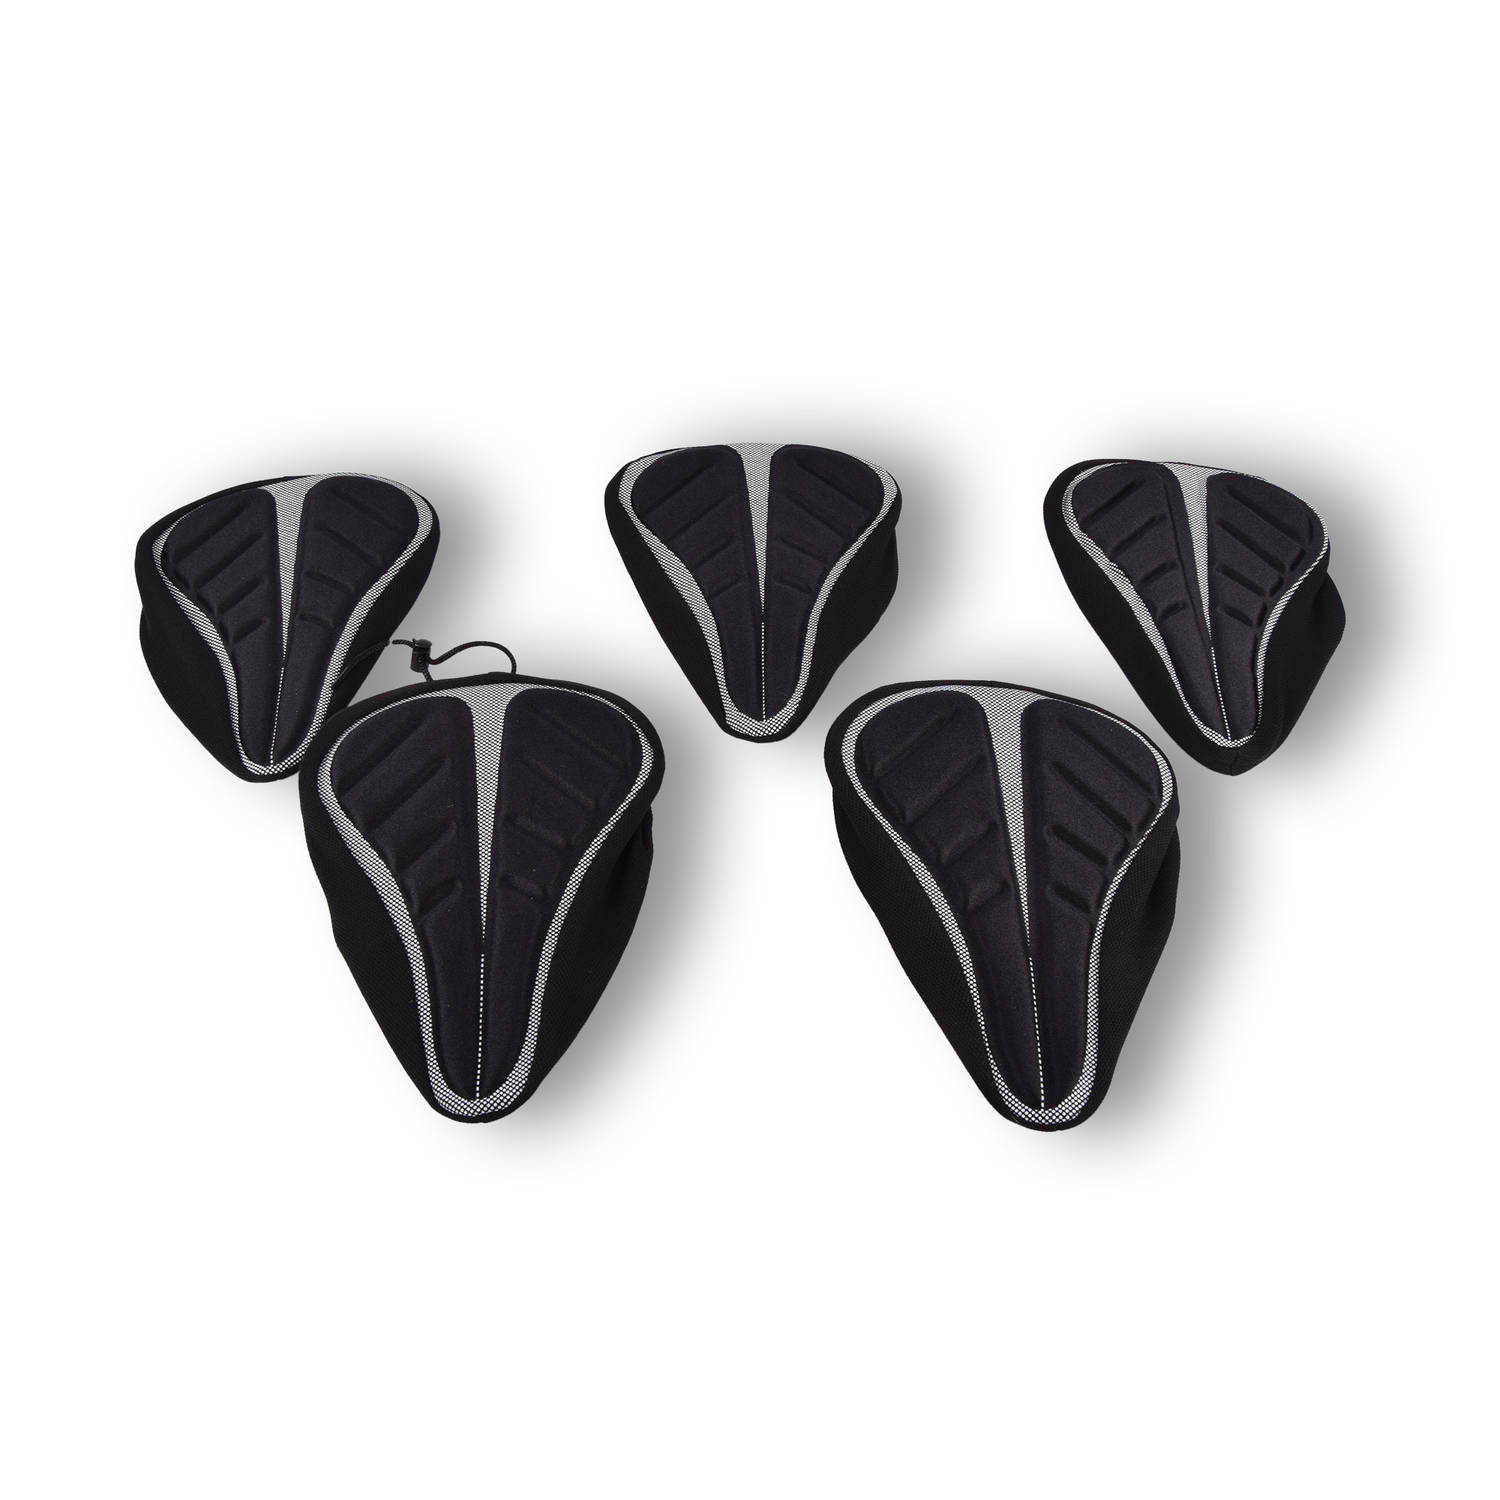 5x Duurzame Fietszadelhoes van Zwart Polyester Bescherming voor Fietszadels 29x20x2.5 cm